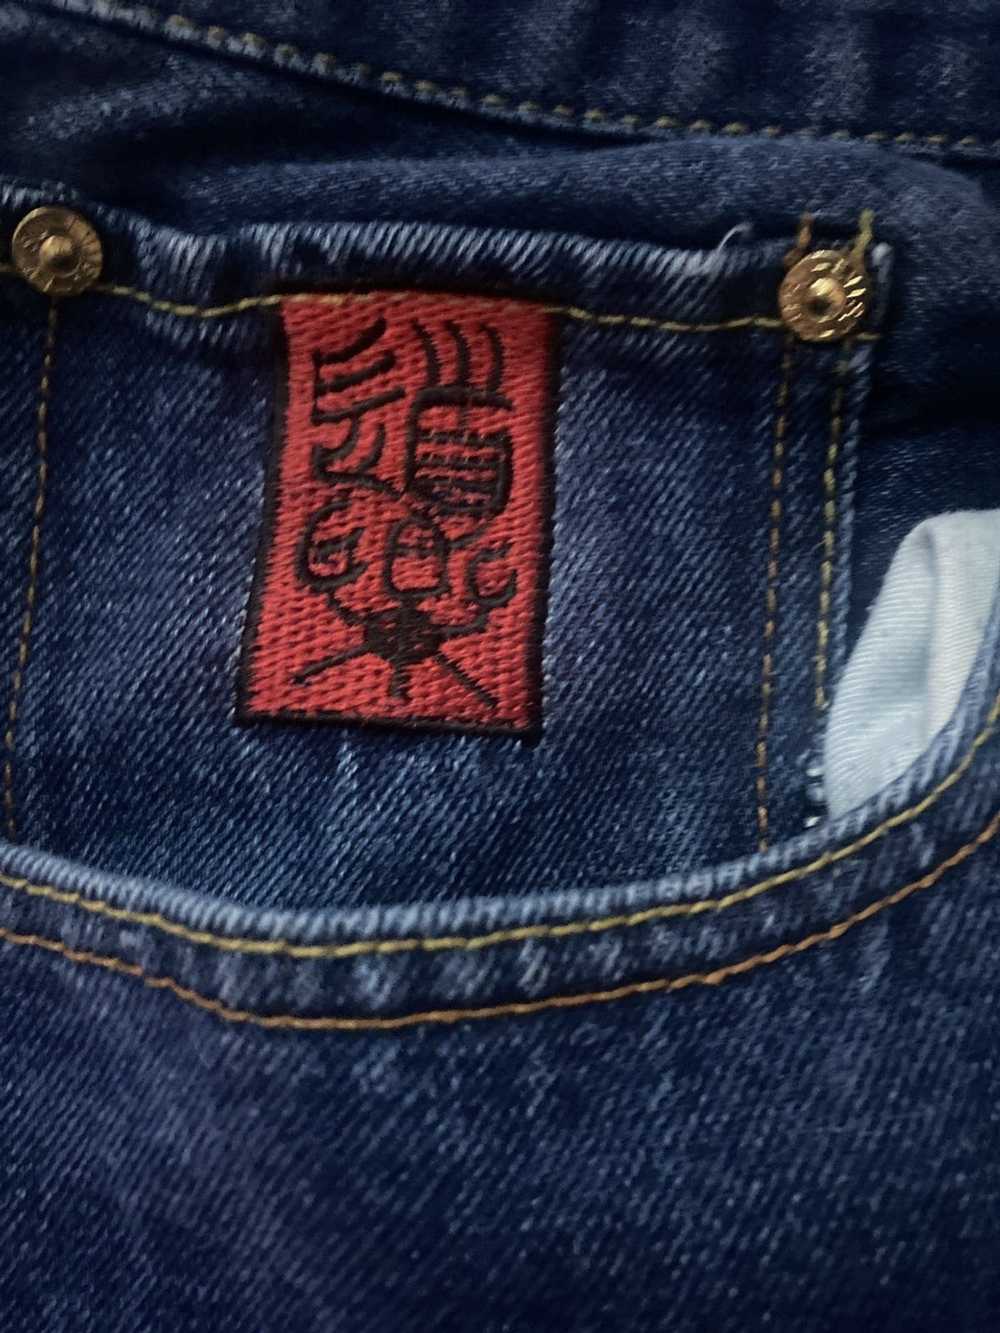 Japanese Brand Japanese shorts - image 2